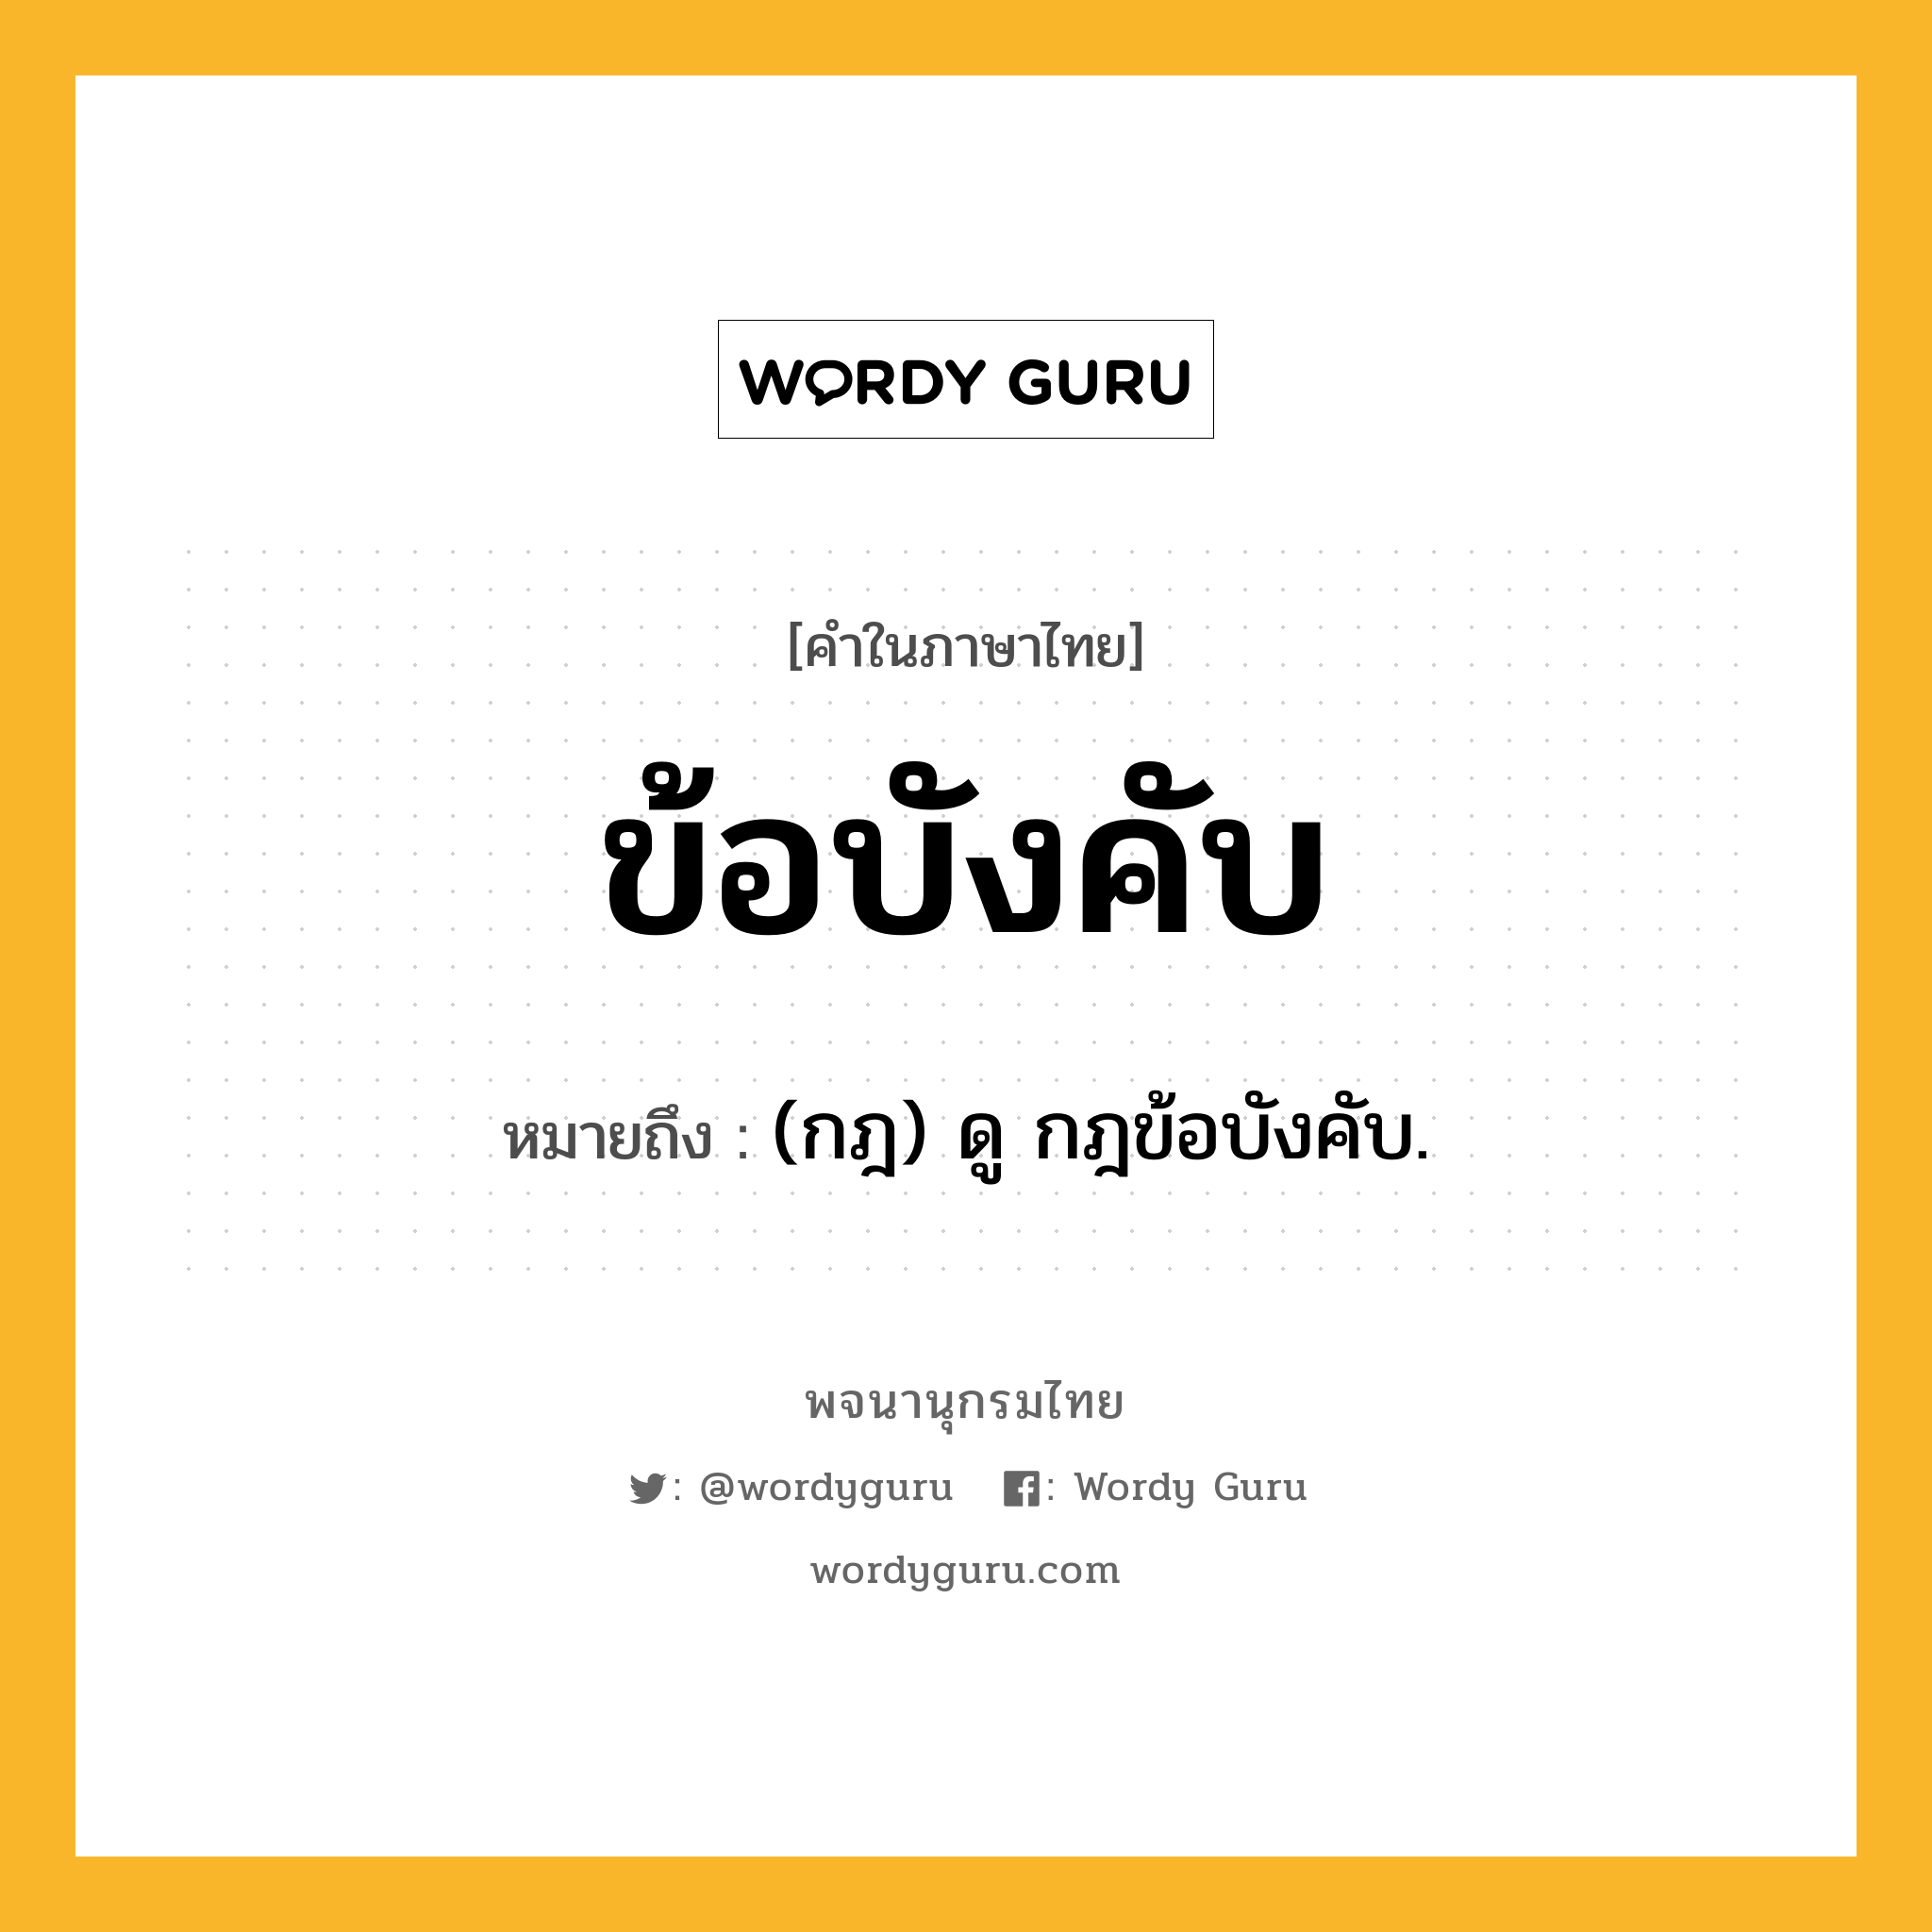 ข้อบังคับ ความหมาย หมายถึงอะไร?, คำในภาษาไทย ข้อบังคับ หมายถึง (กฎ) ดู กฎข้อบังคับ.